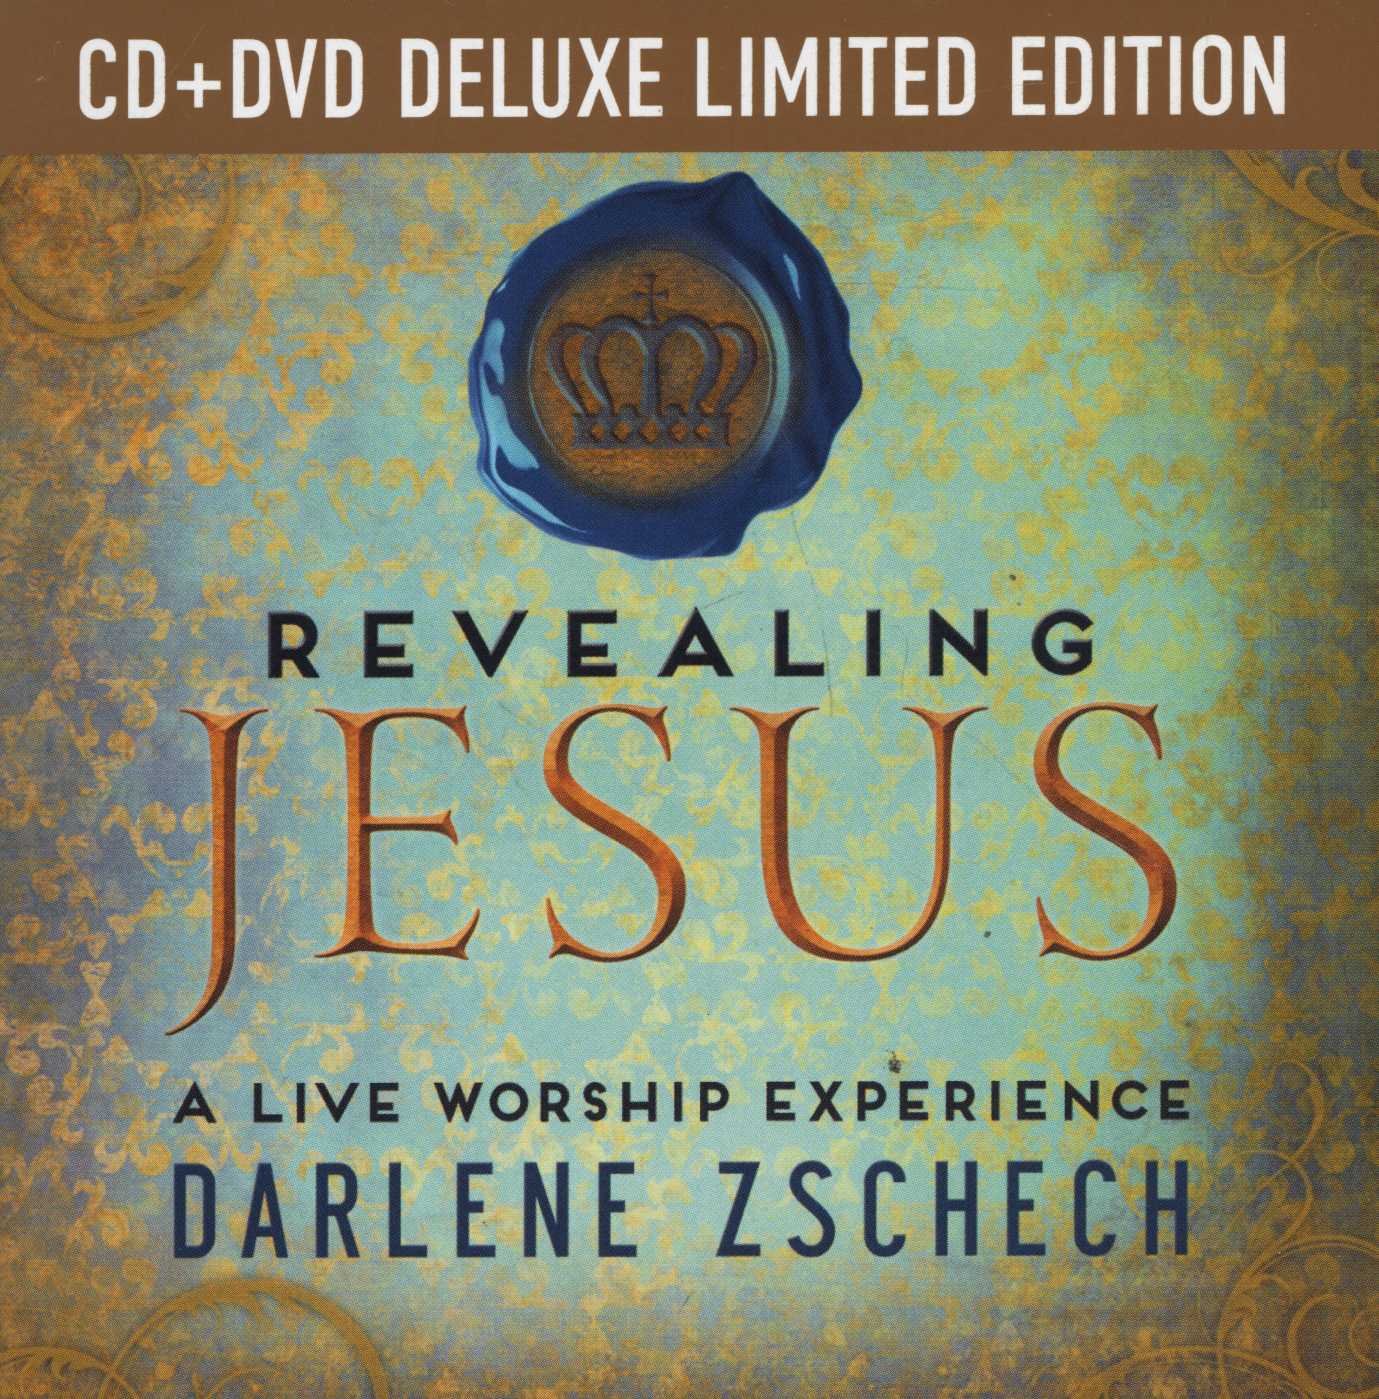 [이벤트30%]Darlene Zschech - Revealing Jesus [Deluxe Limited Edition] (CD+DVD)